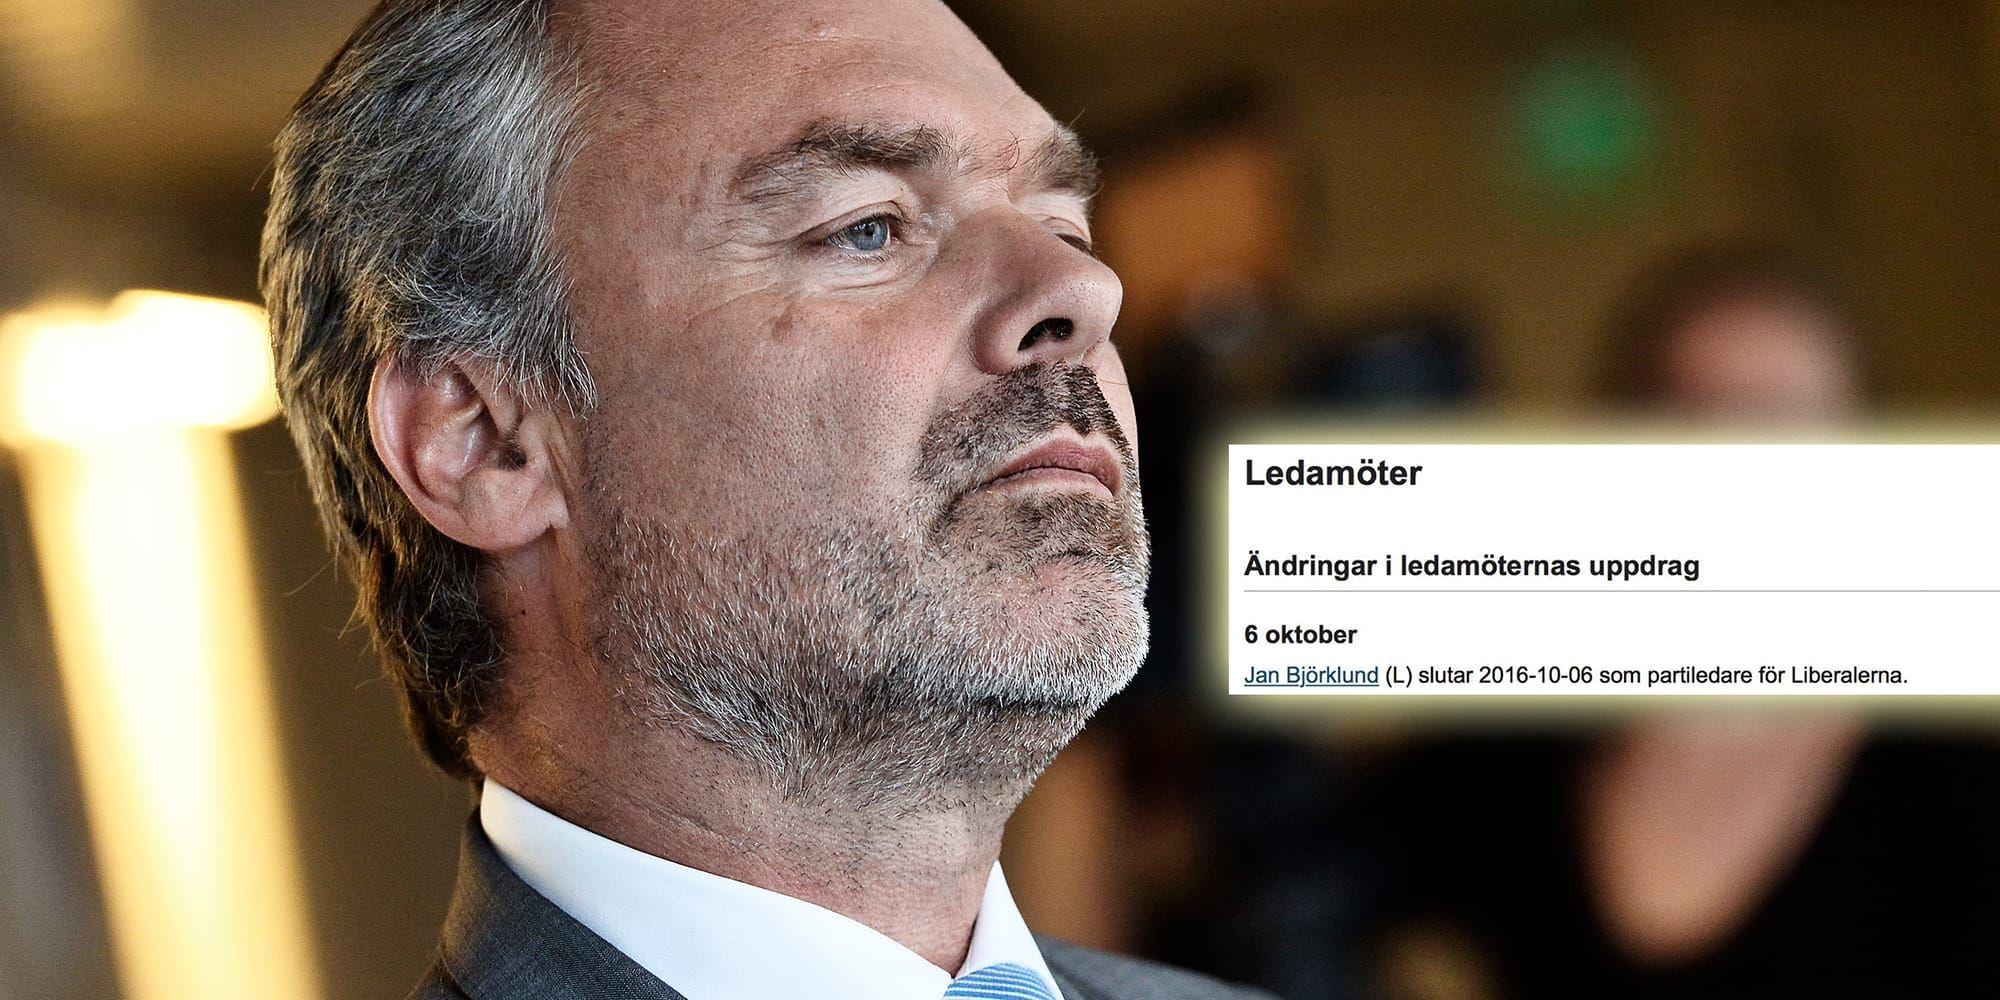 På Riksdagens hemsida publicerades att Jan Björklund avgår som partiledare för Liberalerna. BILD: TT och SKÄRMDUMP